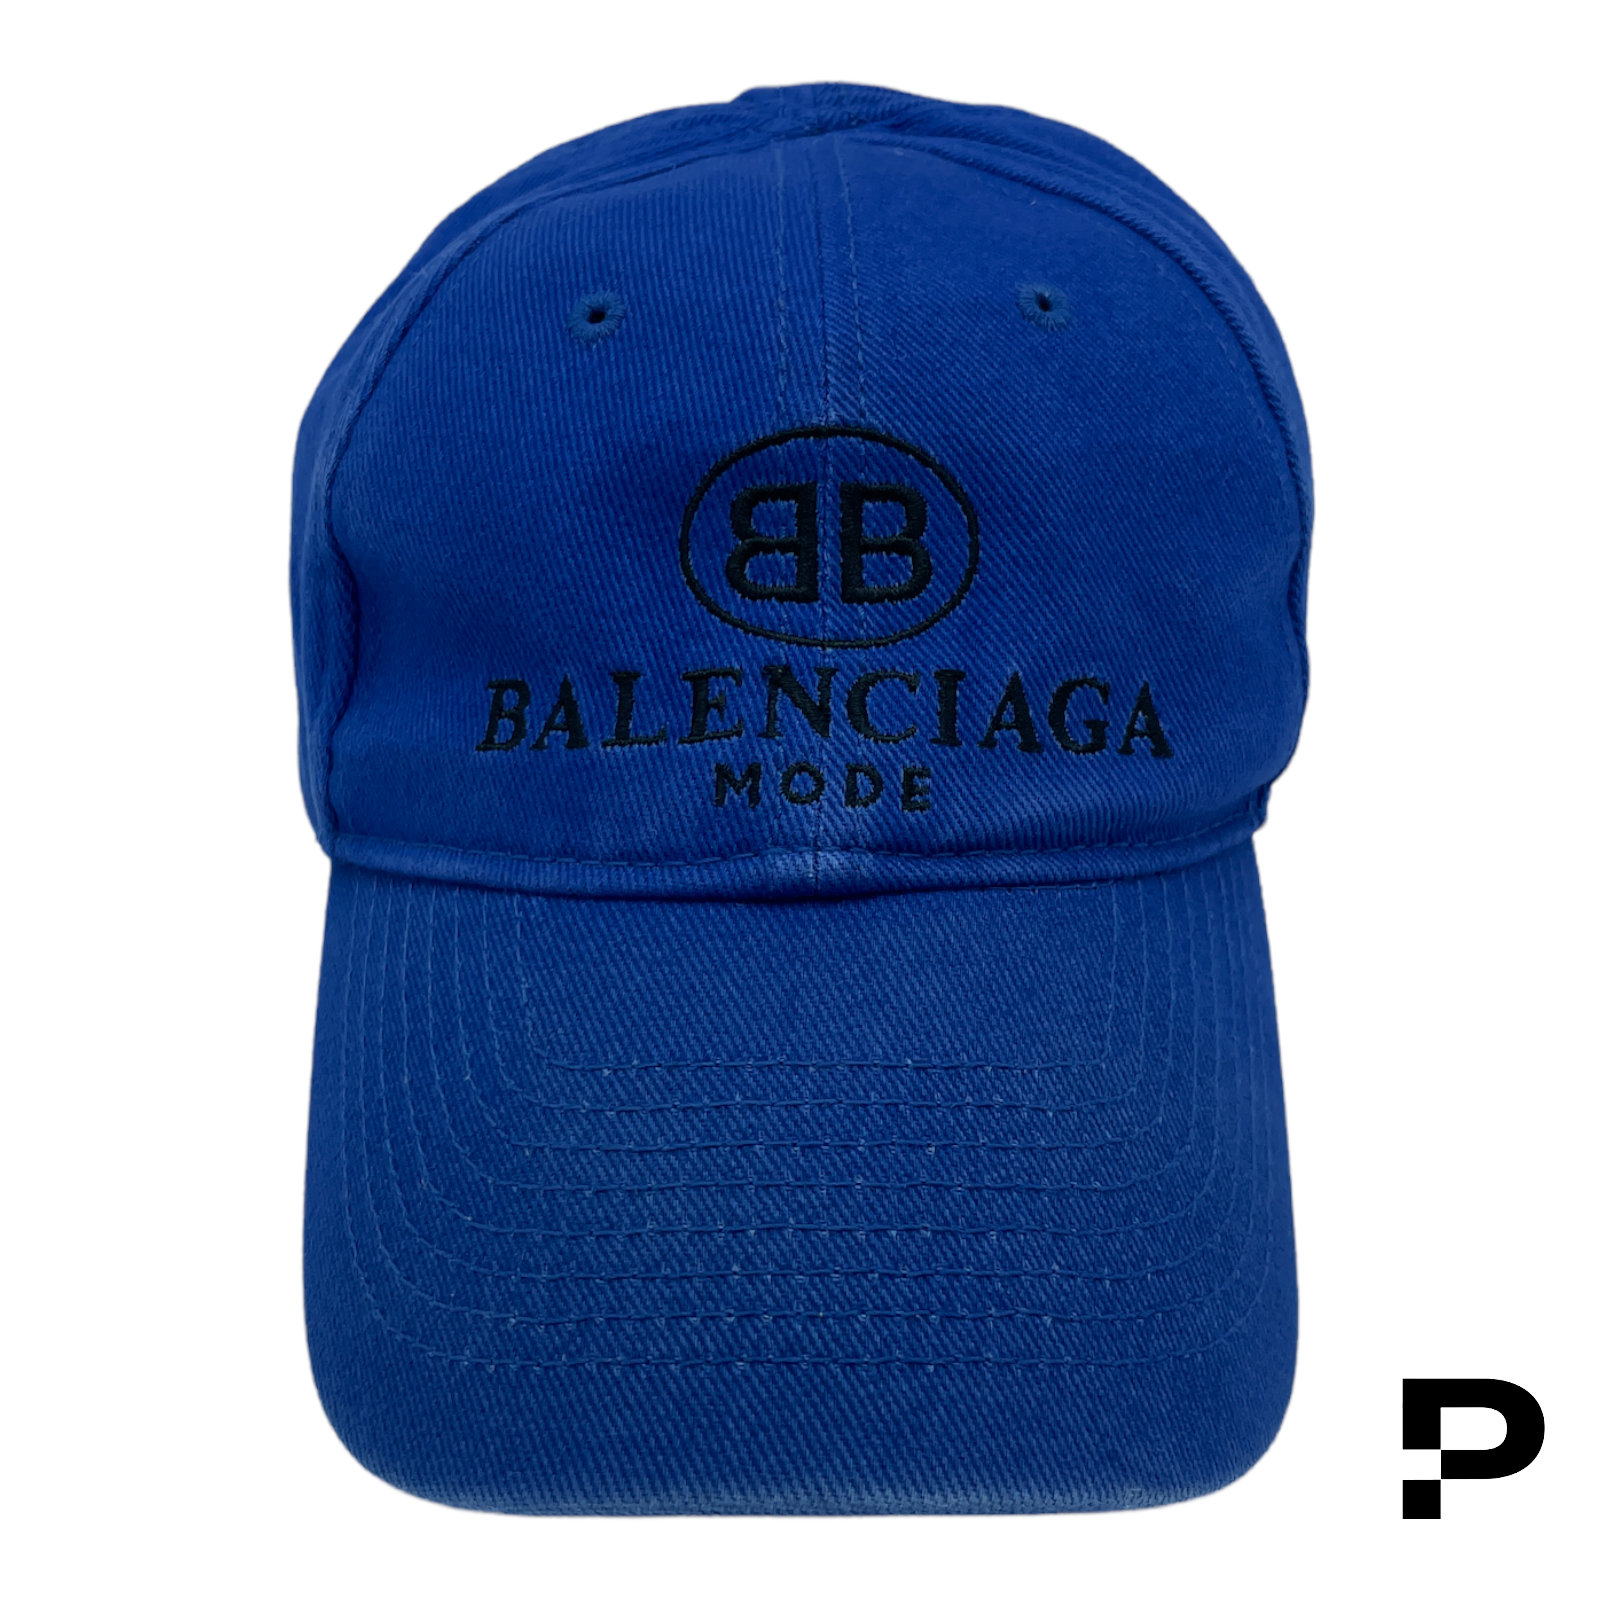 Balenciaga Mode Cap - Blue – PROVENANCE